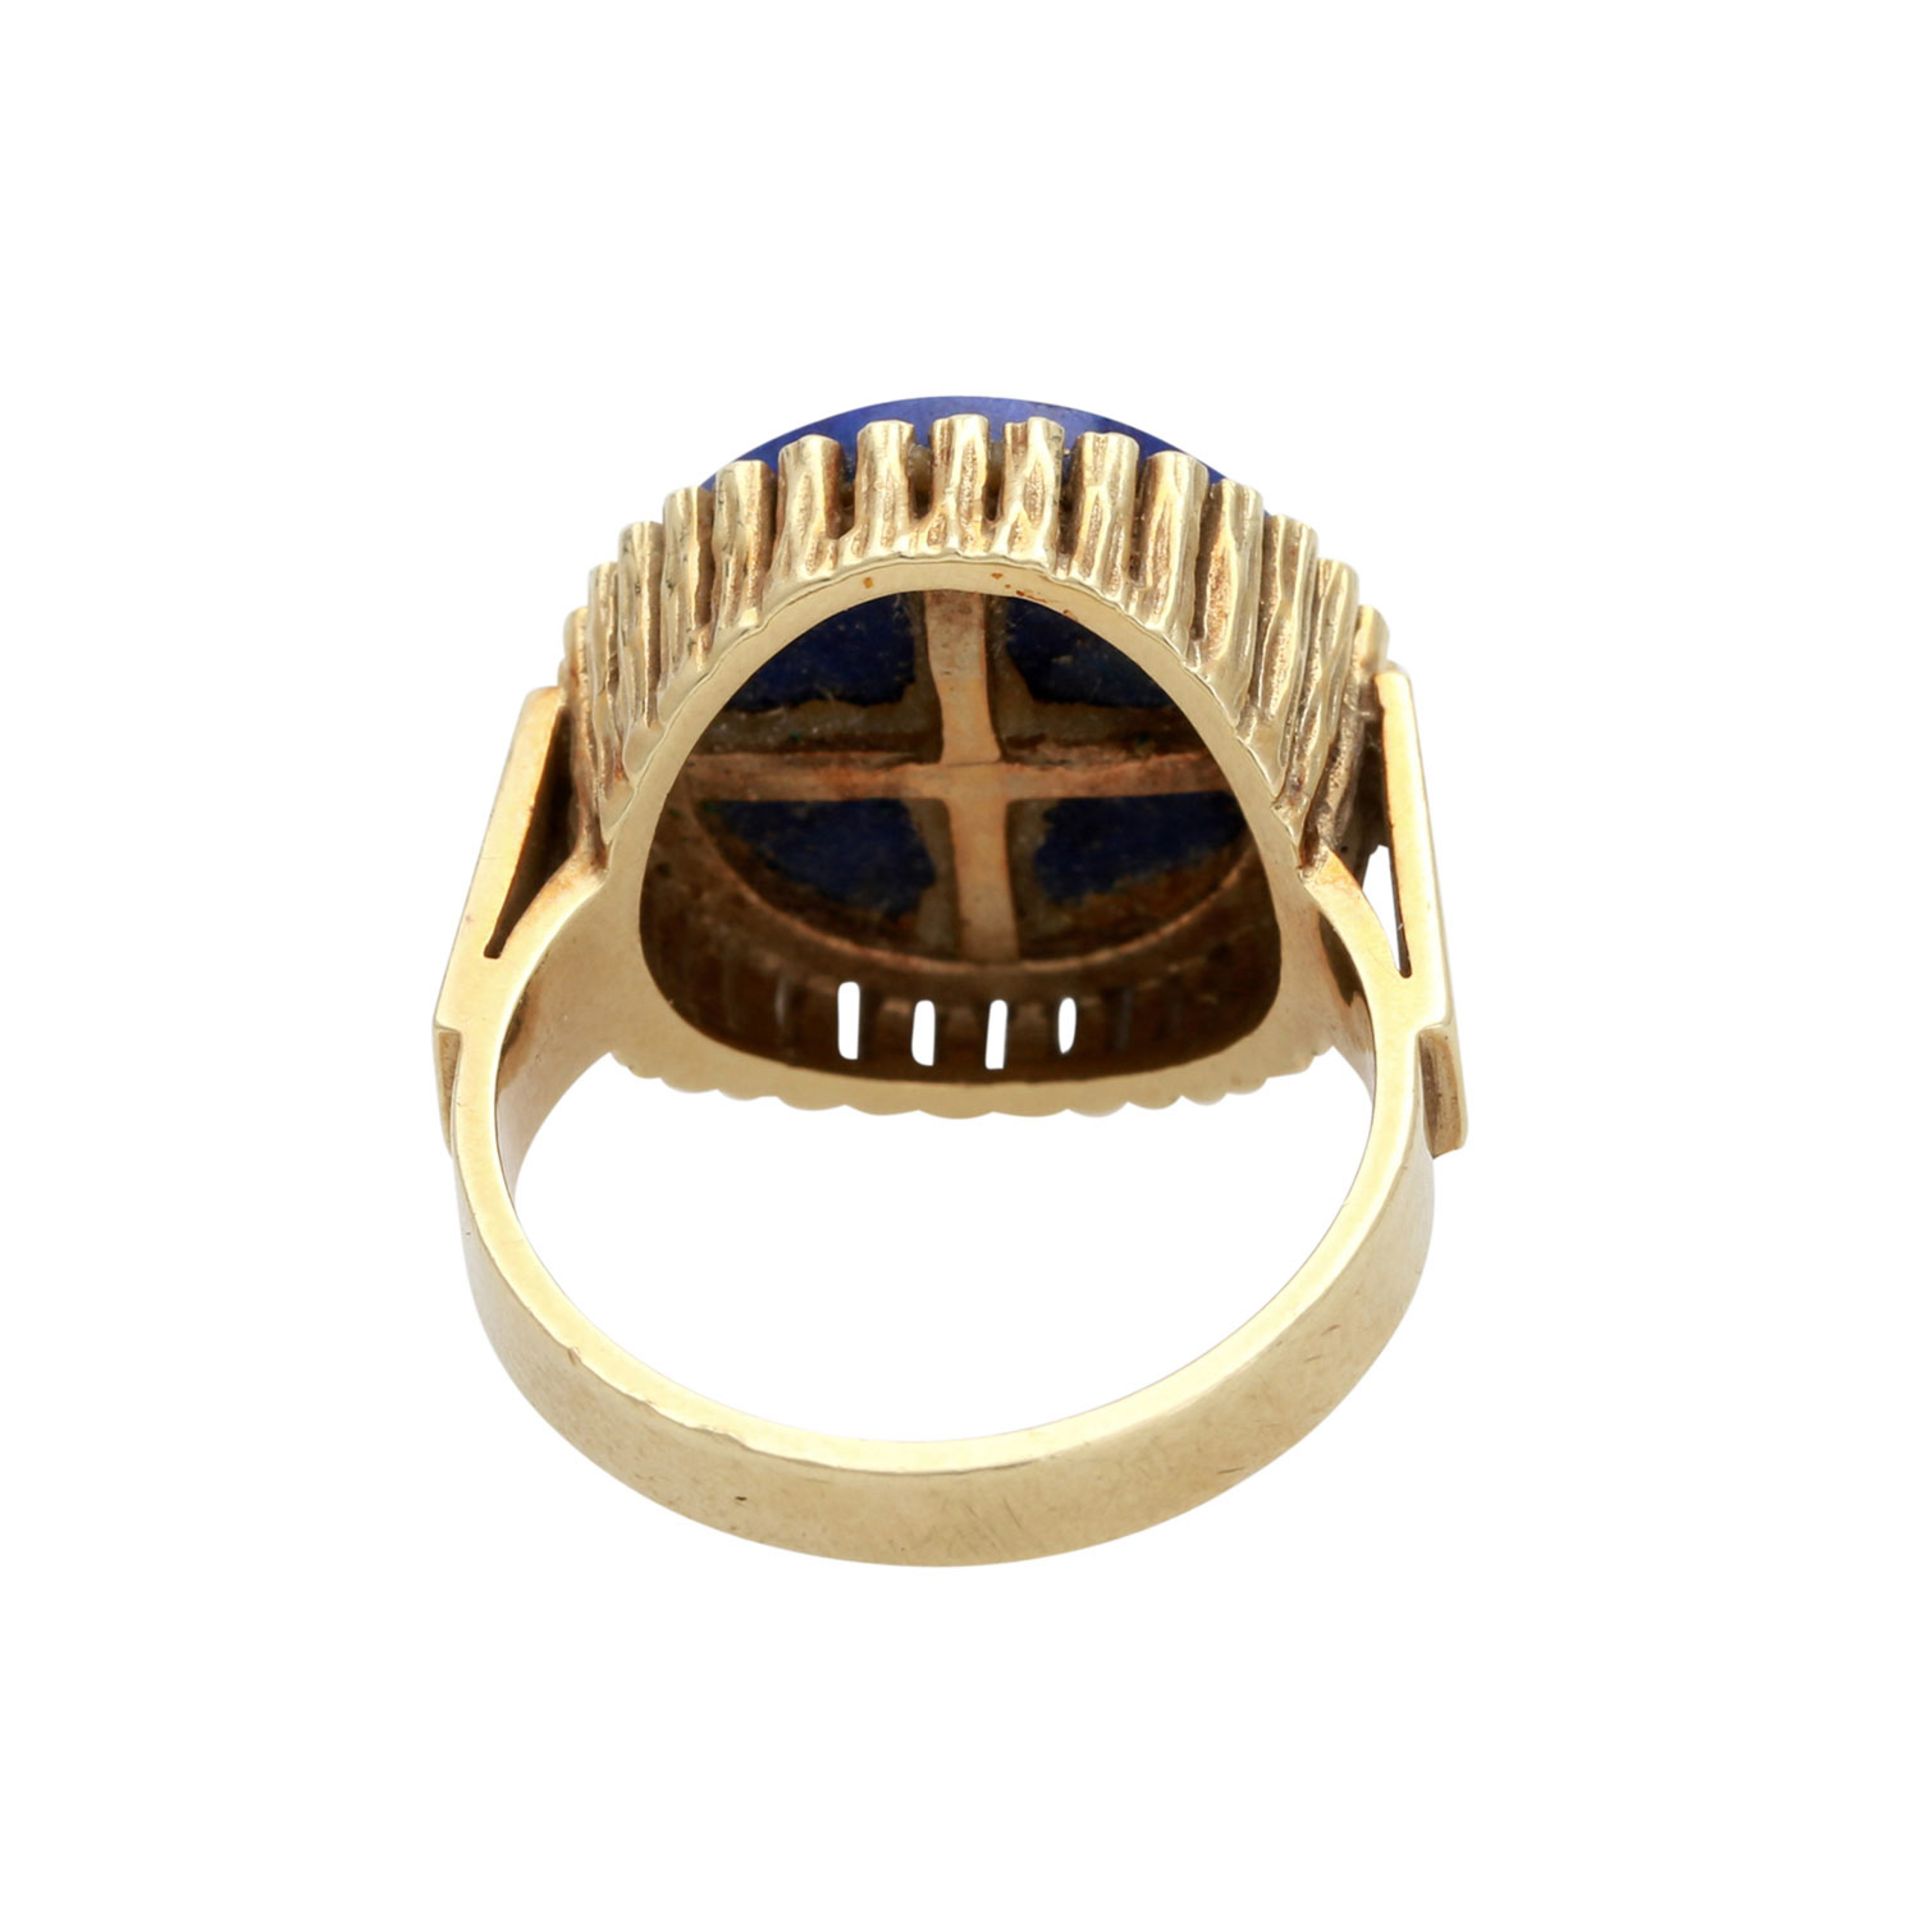 FAHRNER Ring mit Lapislazuli-Scheibe in runder Fassung aus amorph strukturierten Stäbchen. GG 14K, - Bild 4 aus 4